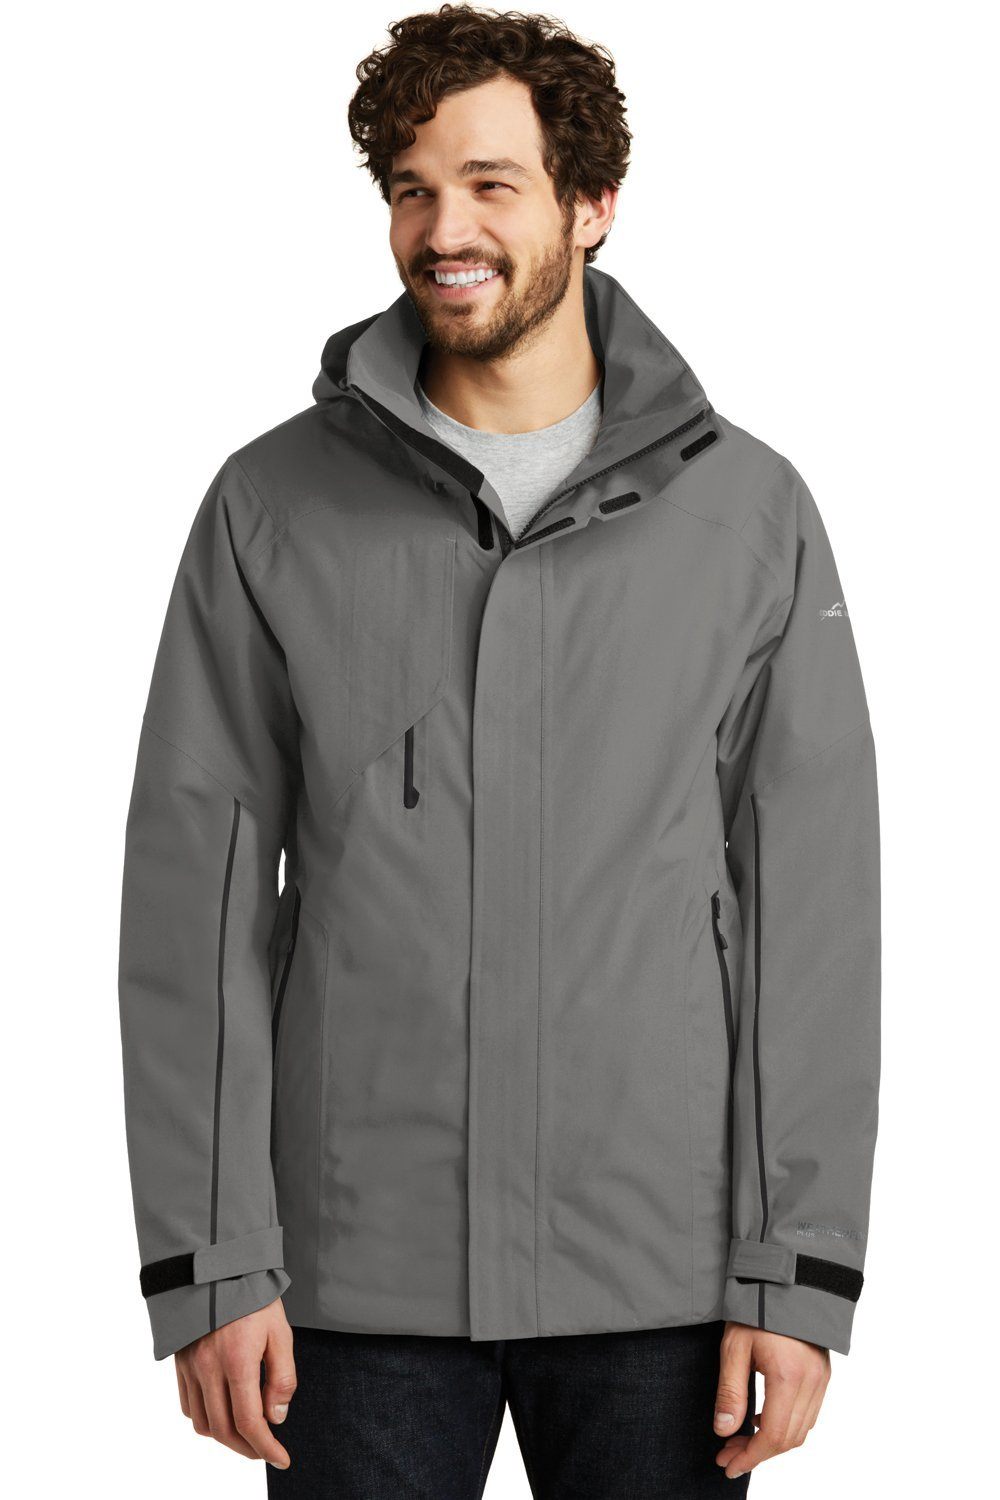 Eddie Bauer Men's WeatherEdge Plus Waterproof Full Zip Hooded Jacket